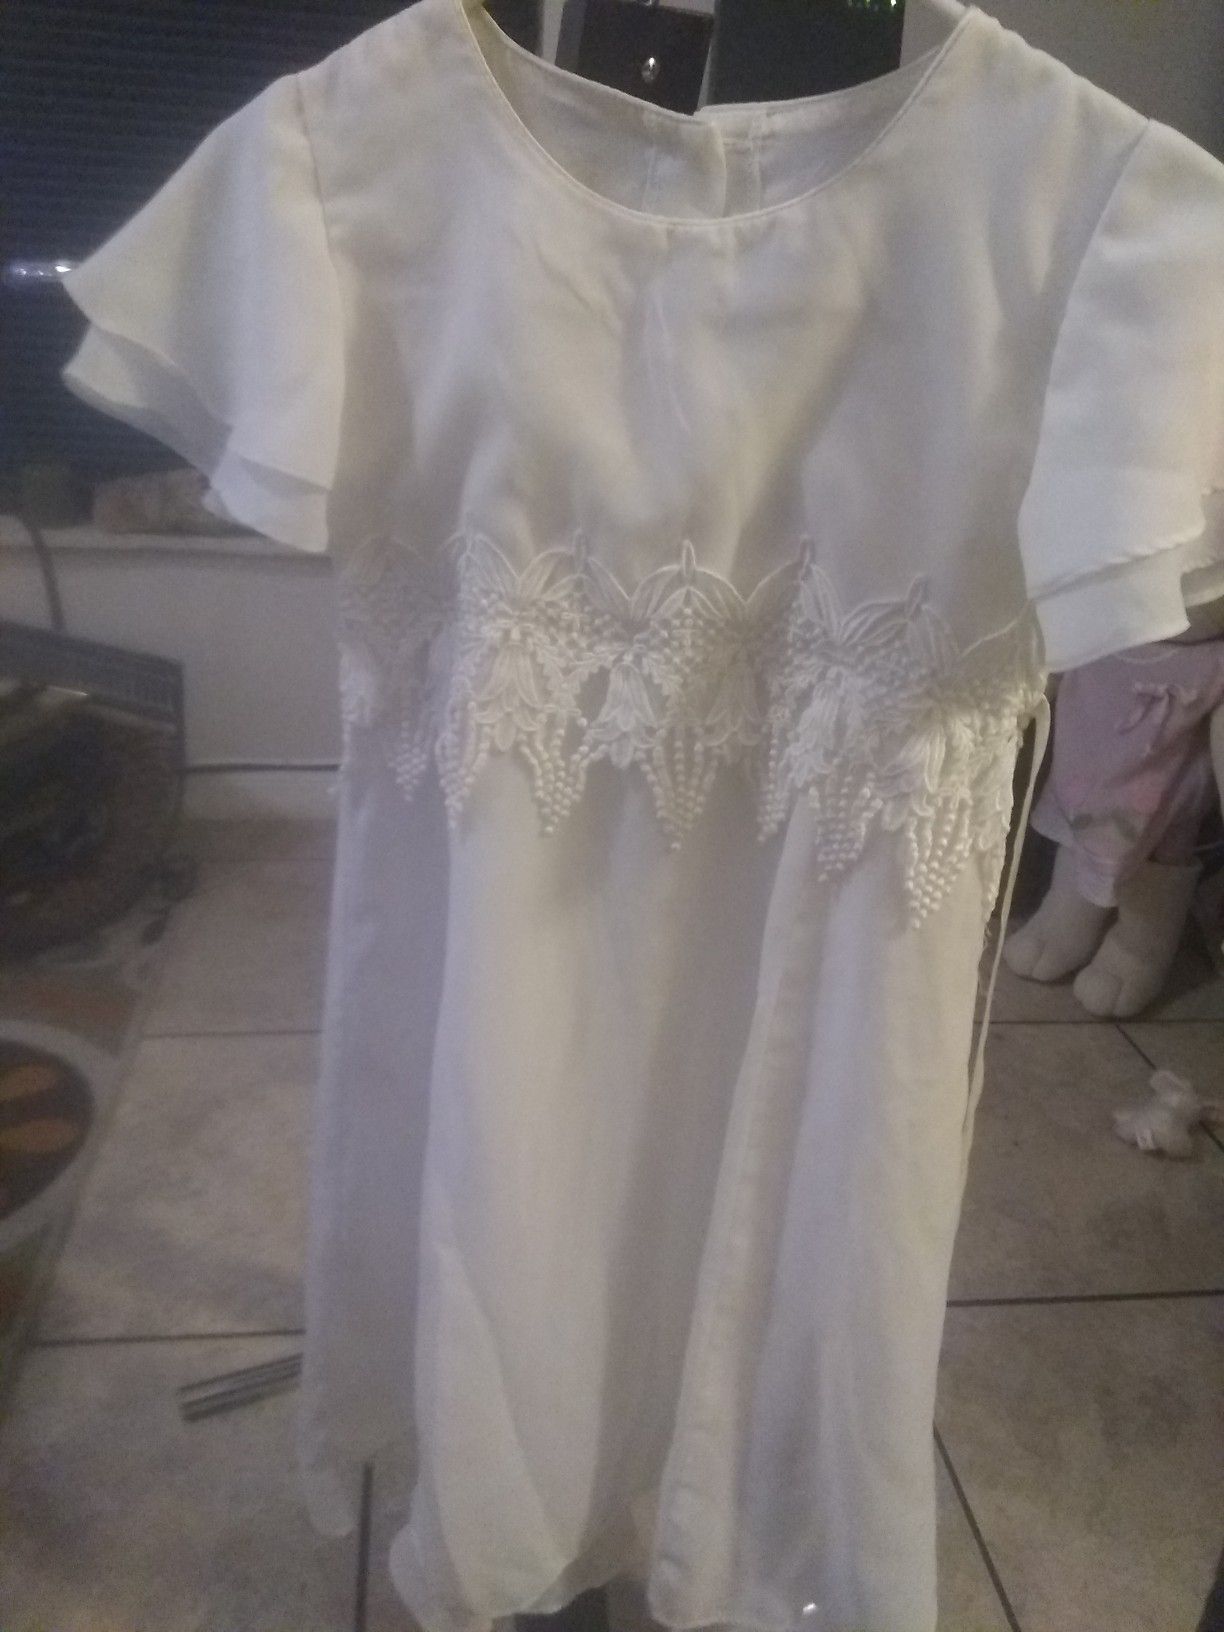 Size 8 white dress